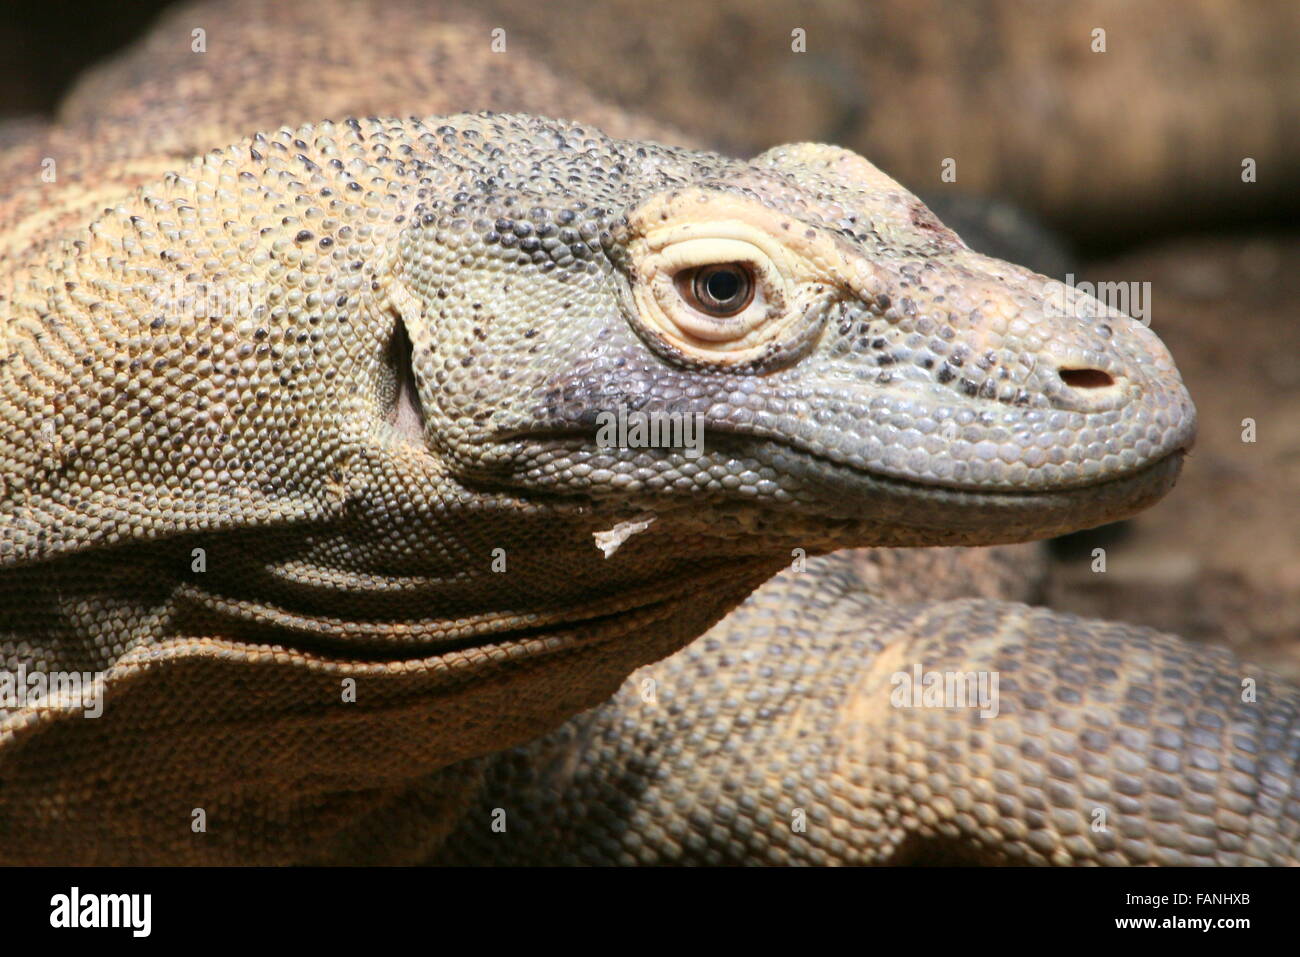 Closeup of the head of a Komodo dragon (Varanus komodoensis) Stock Photo